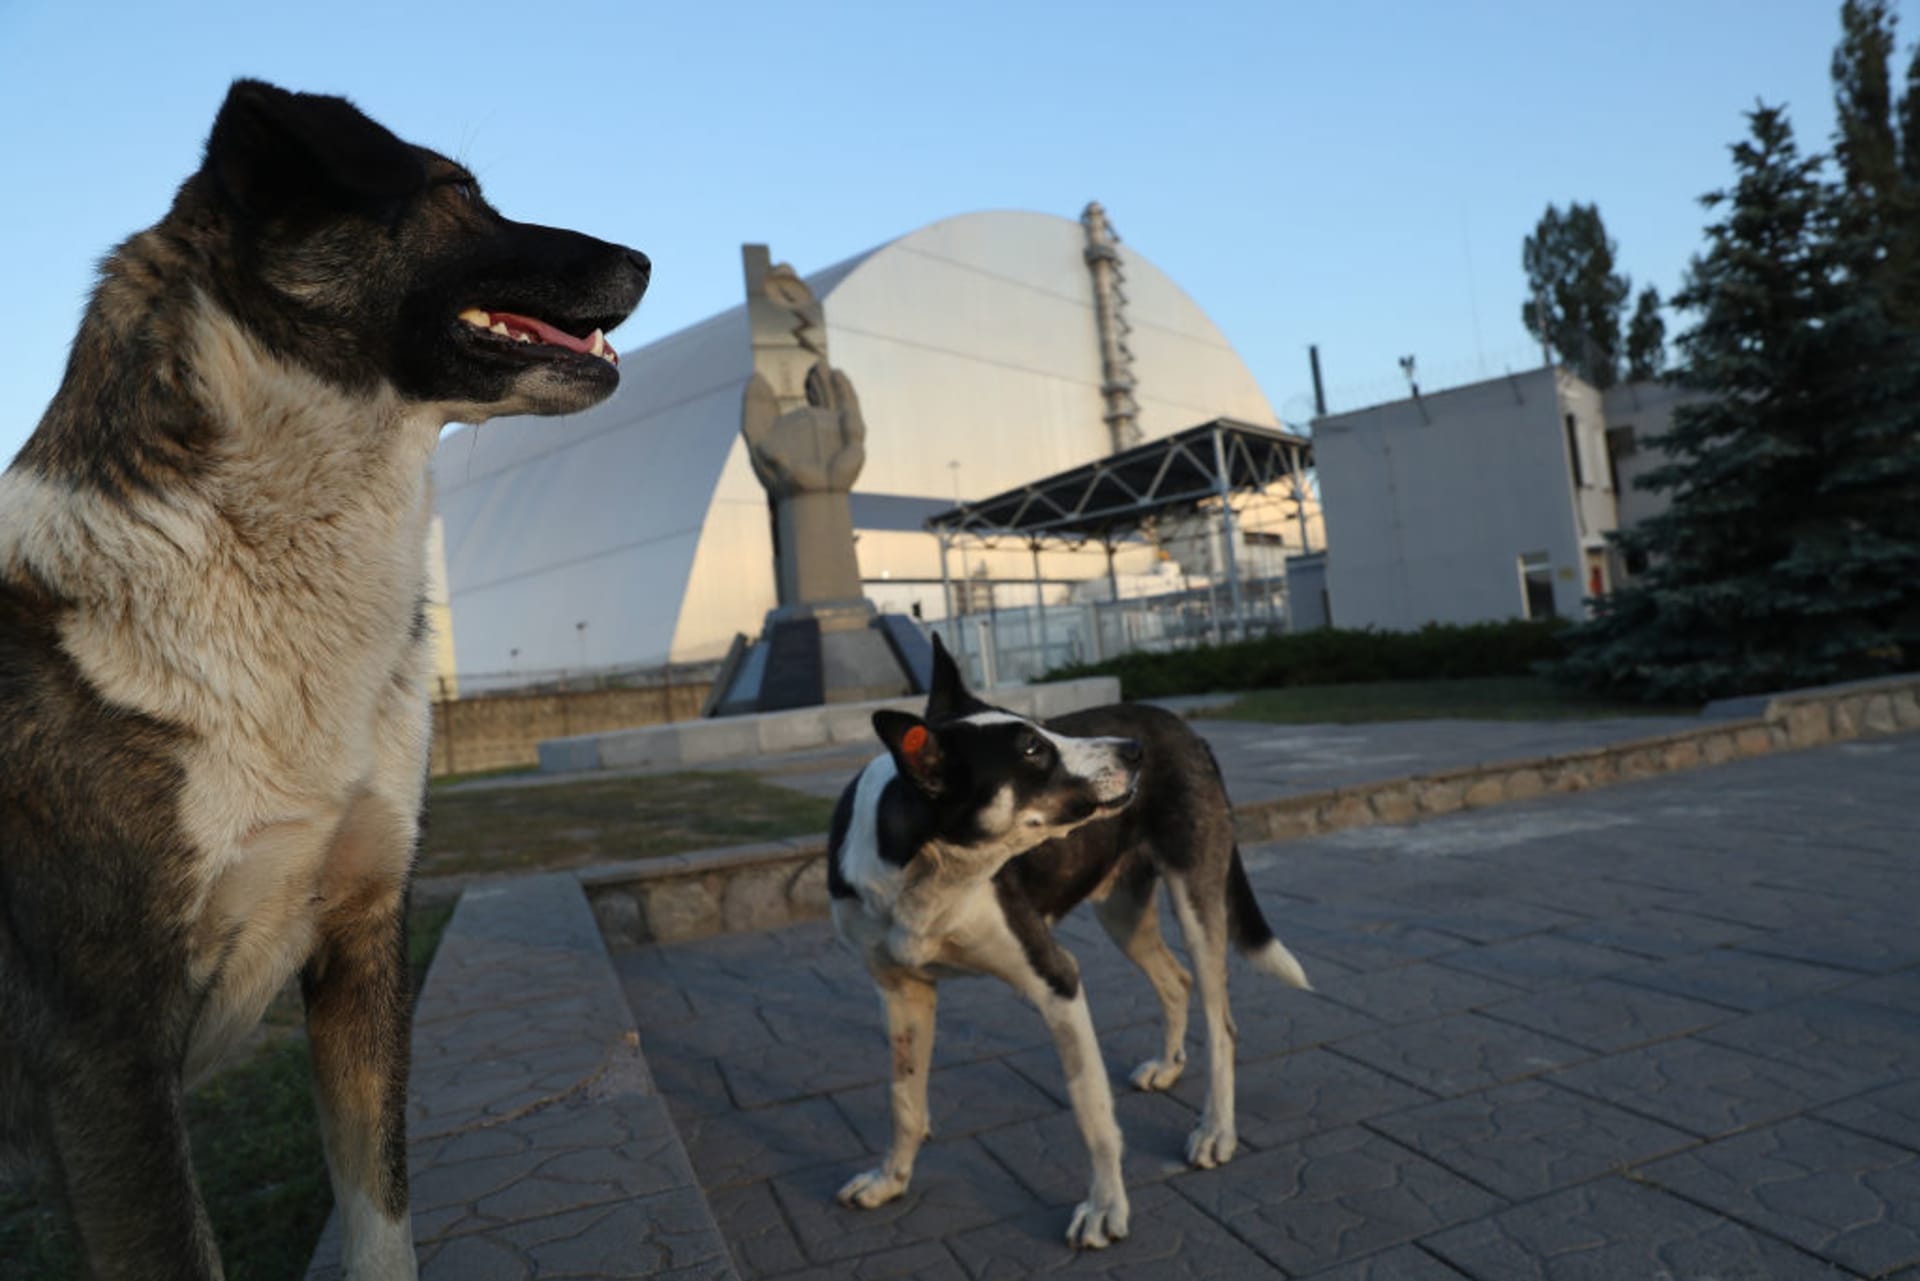 Černobylští psi zažívají explozivní evoluci, tvrdí studie. Ukazuje na vliv radioaktivity a mutací.